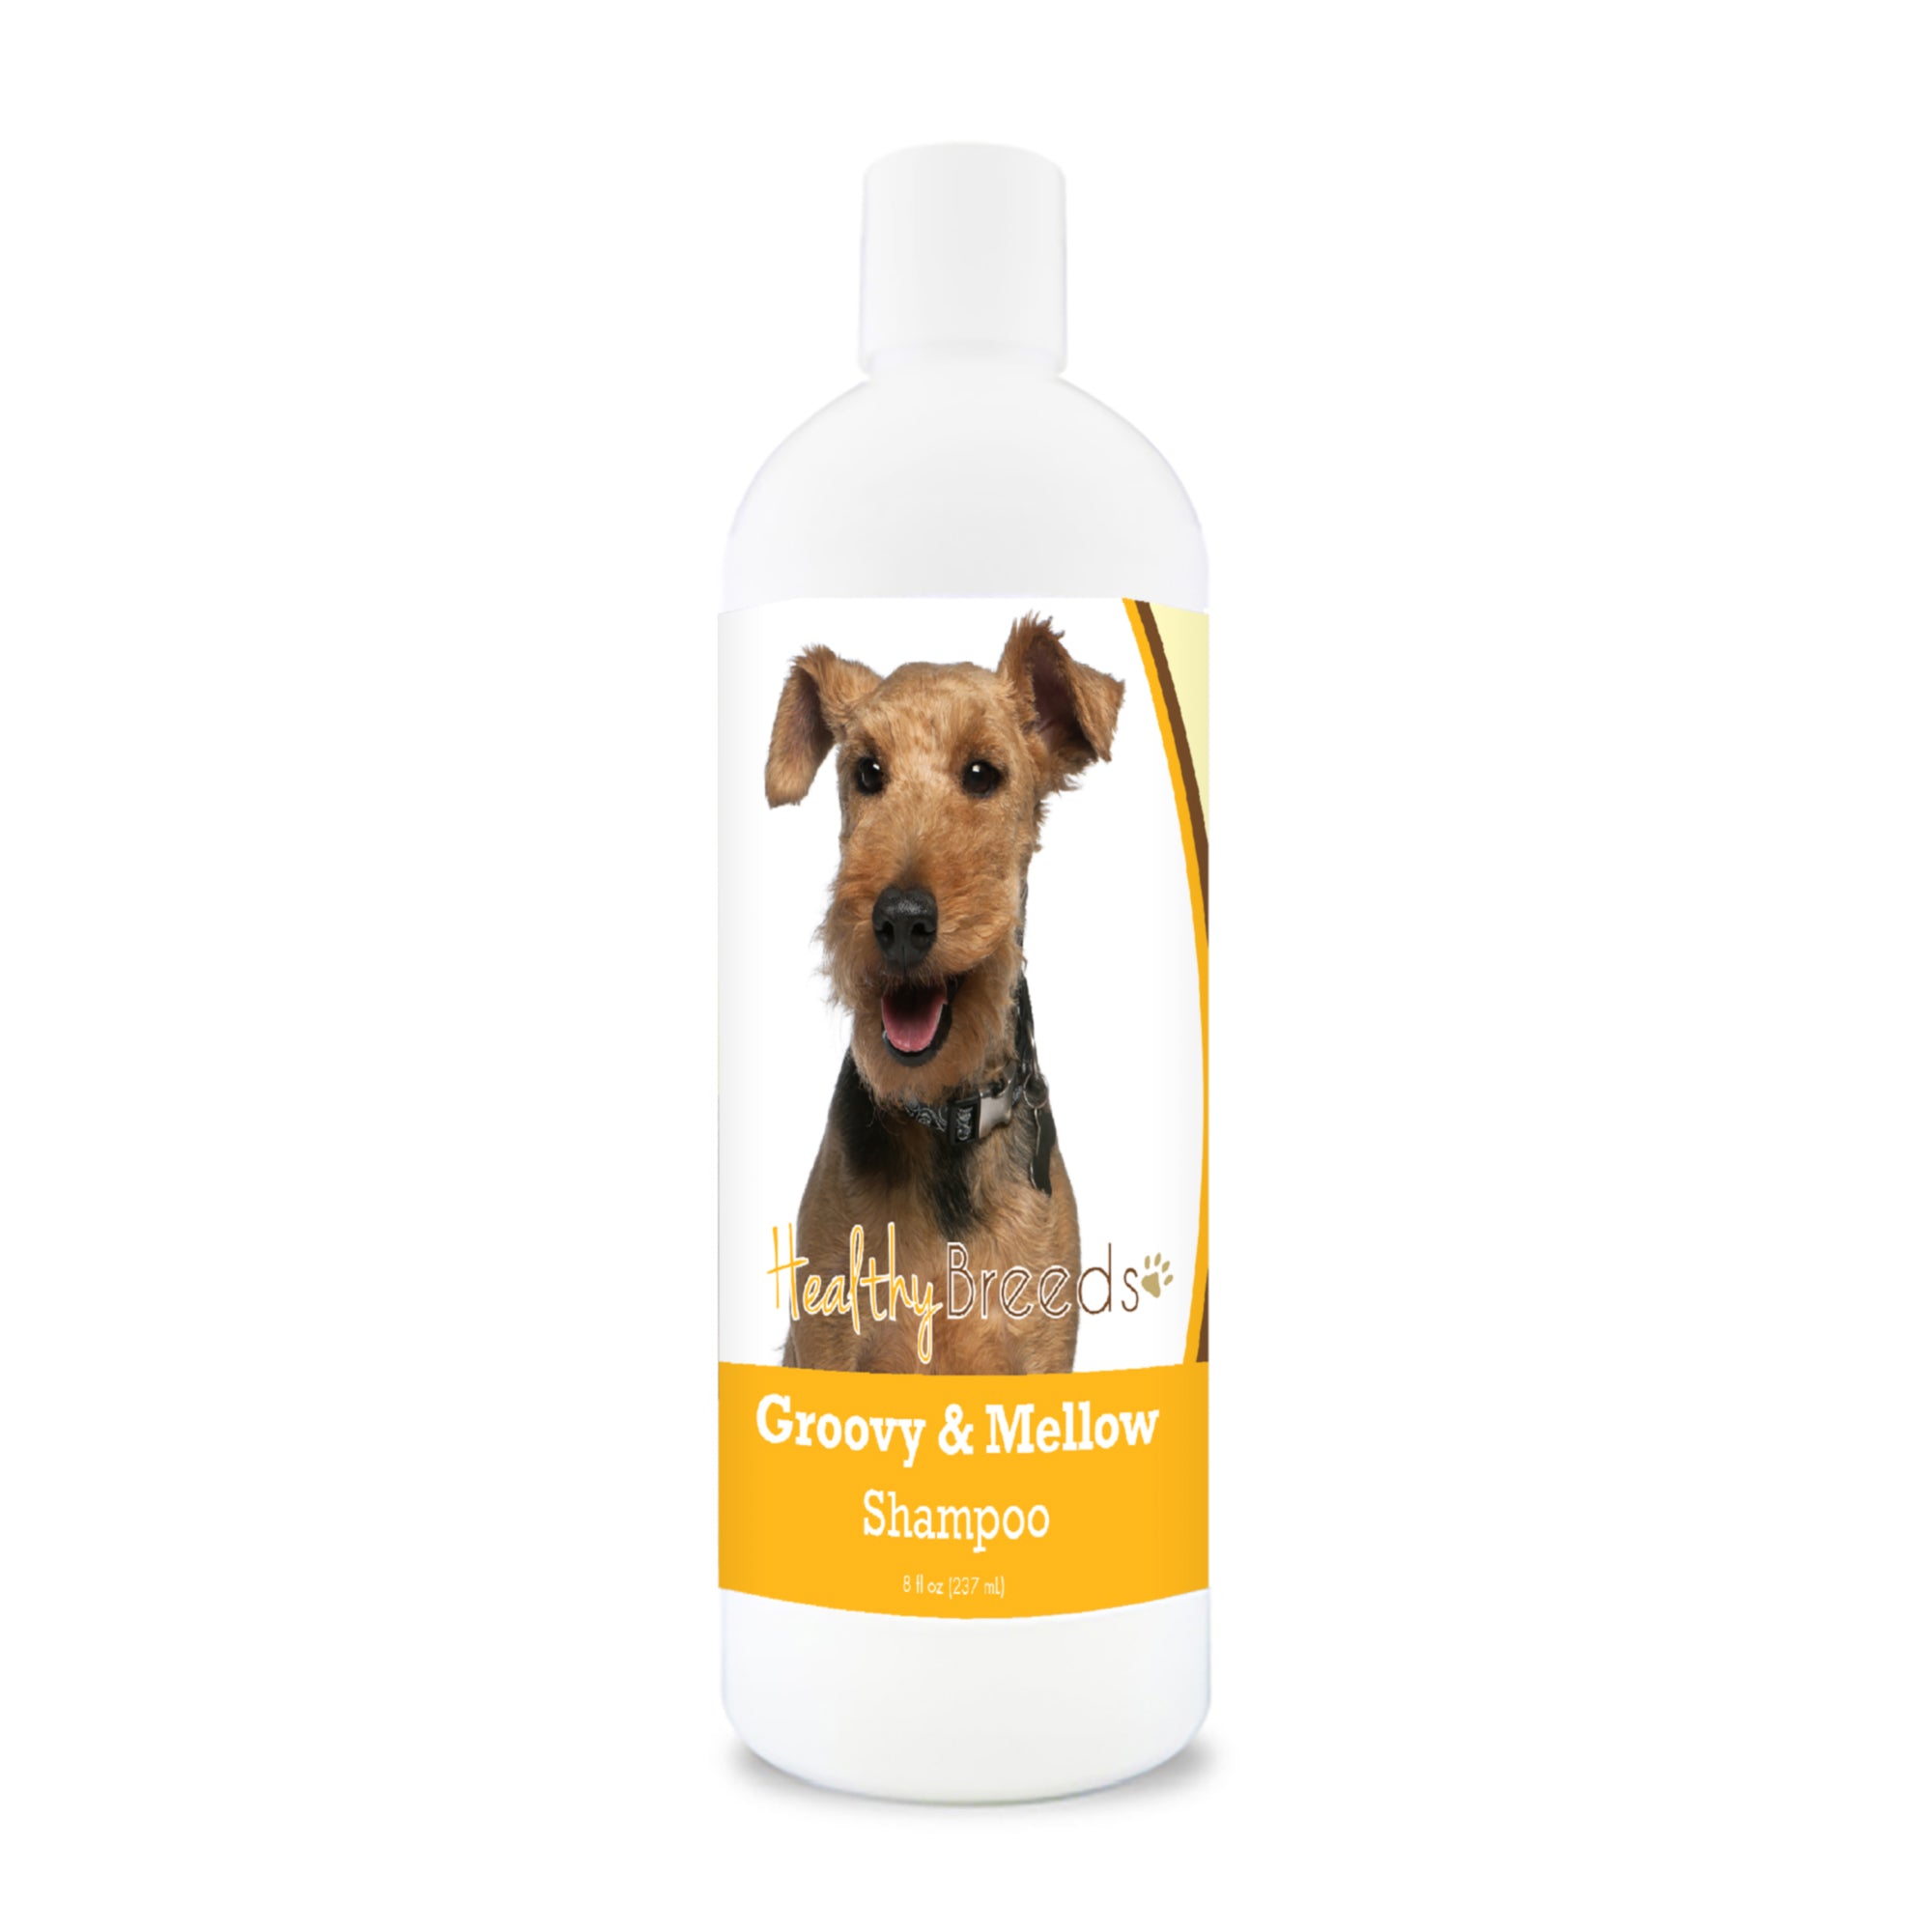 Welsh Terrier Groovy & Mellow Shampoo 8 oz